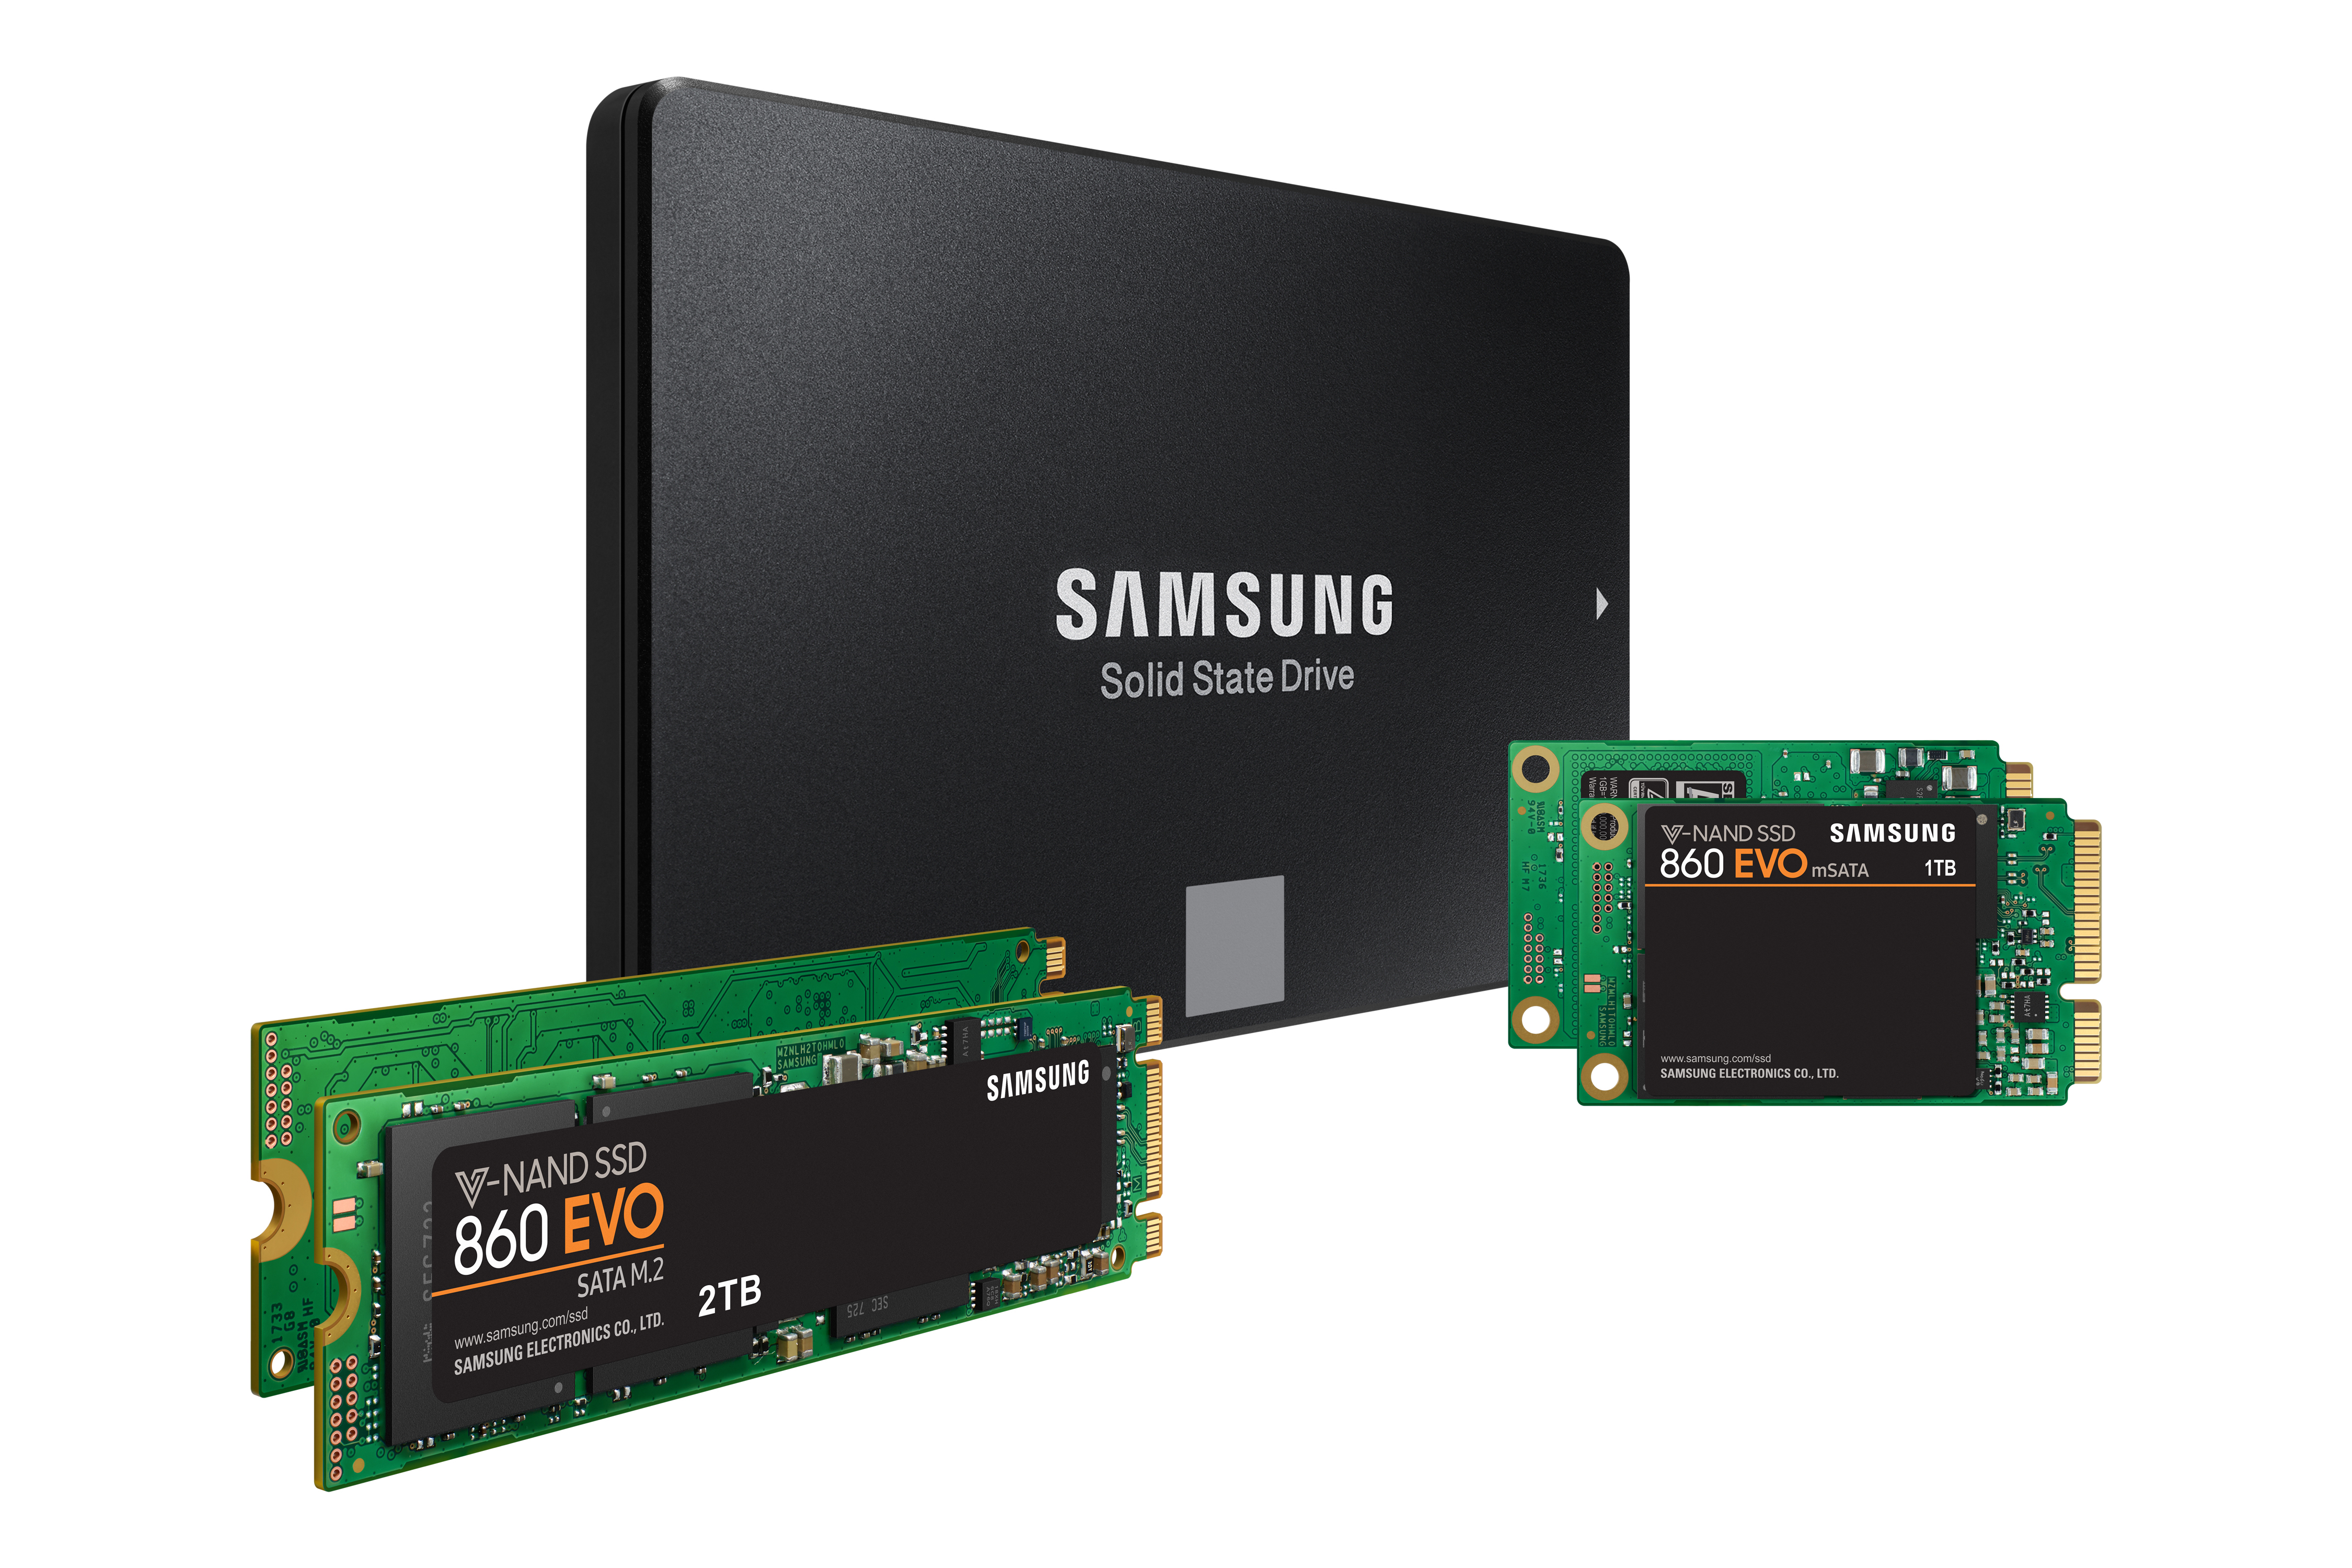 Immagine pubblicata in relazione al seguente contenuto: Samsung lancia ufficialmente le linee di drive SSD 860 Pro e 860 EVO | Nome immagine: news27753_Samsung-860-Pro-860-EVO_2.jpg